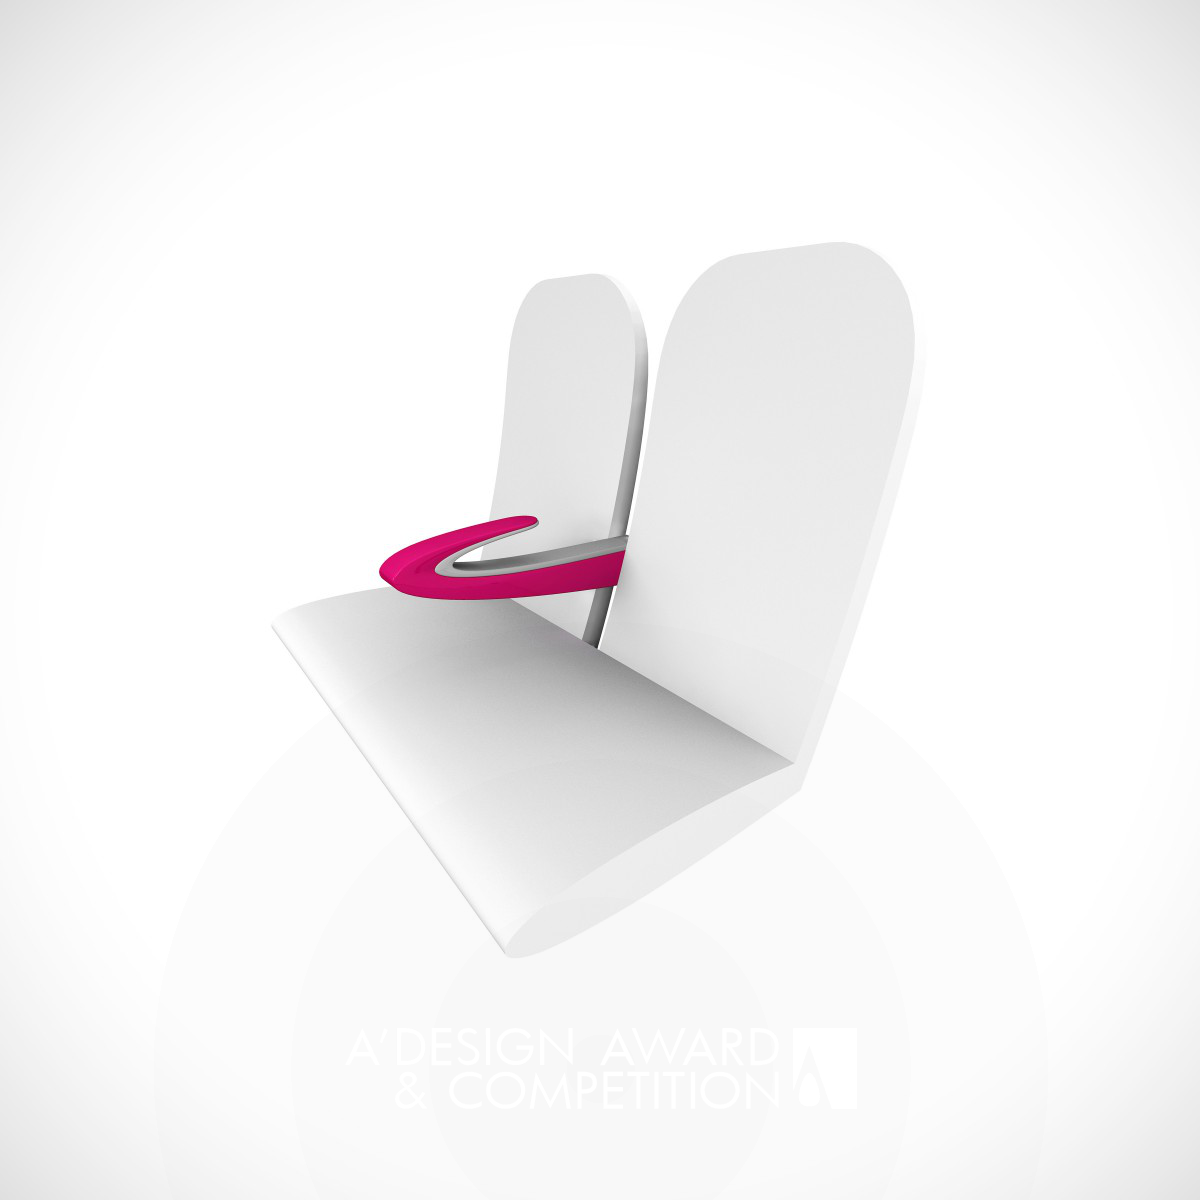 Paperclip Armrest Armrest for high-density seating